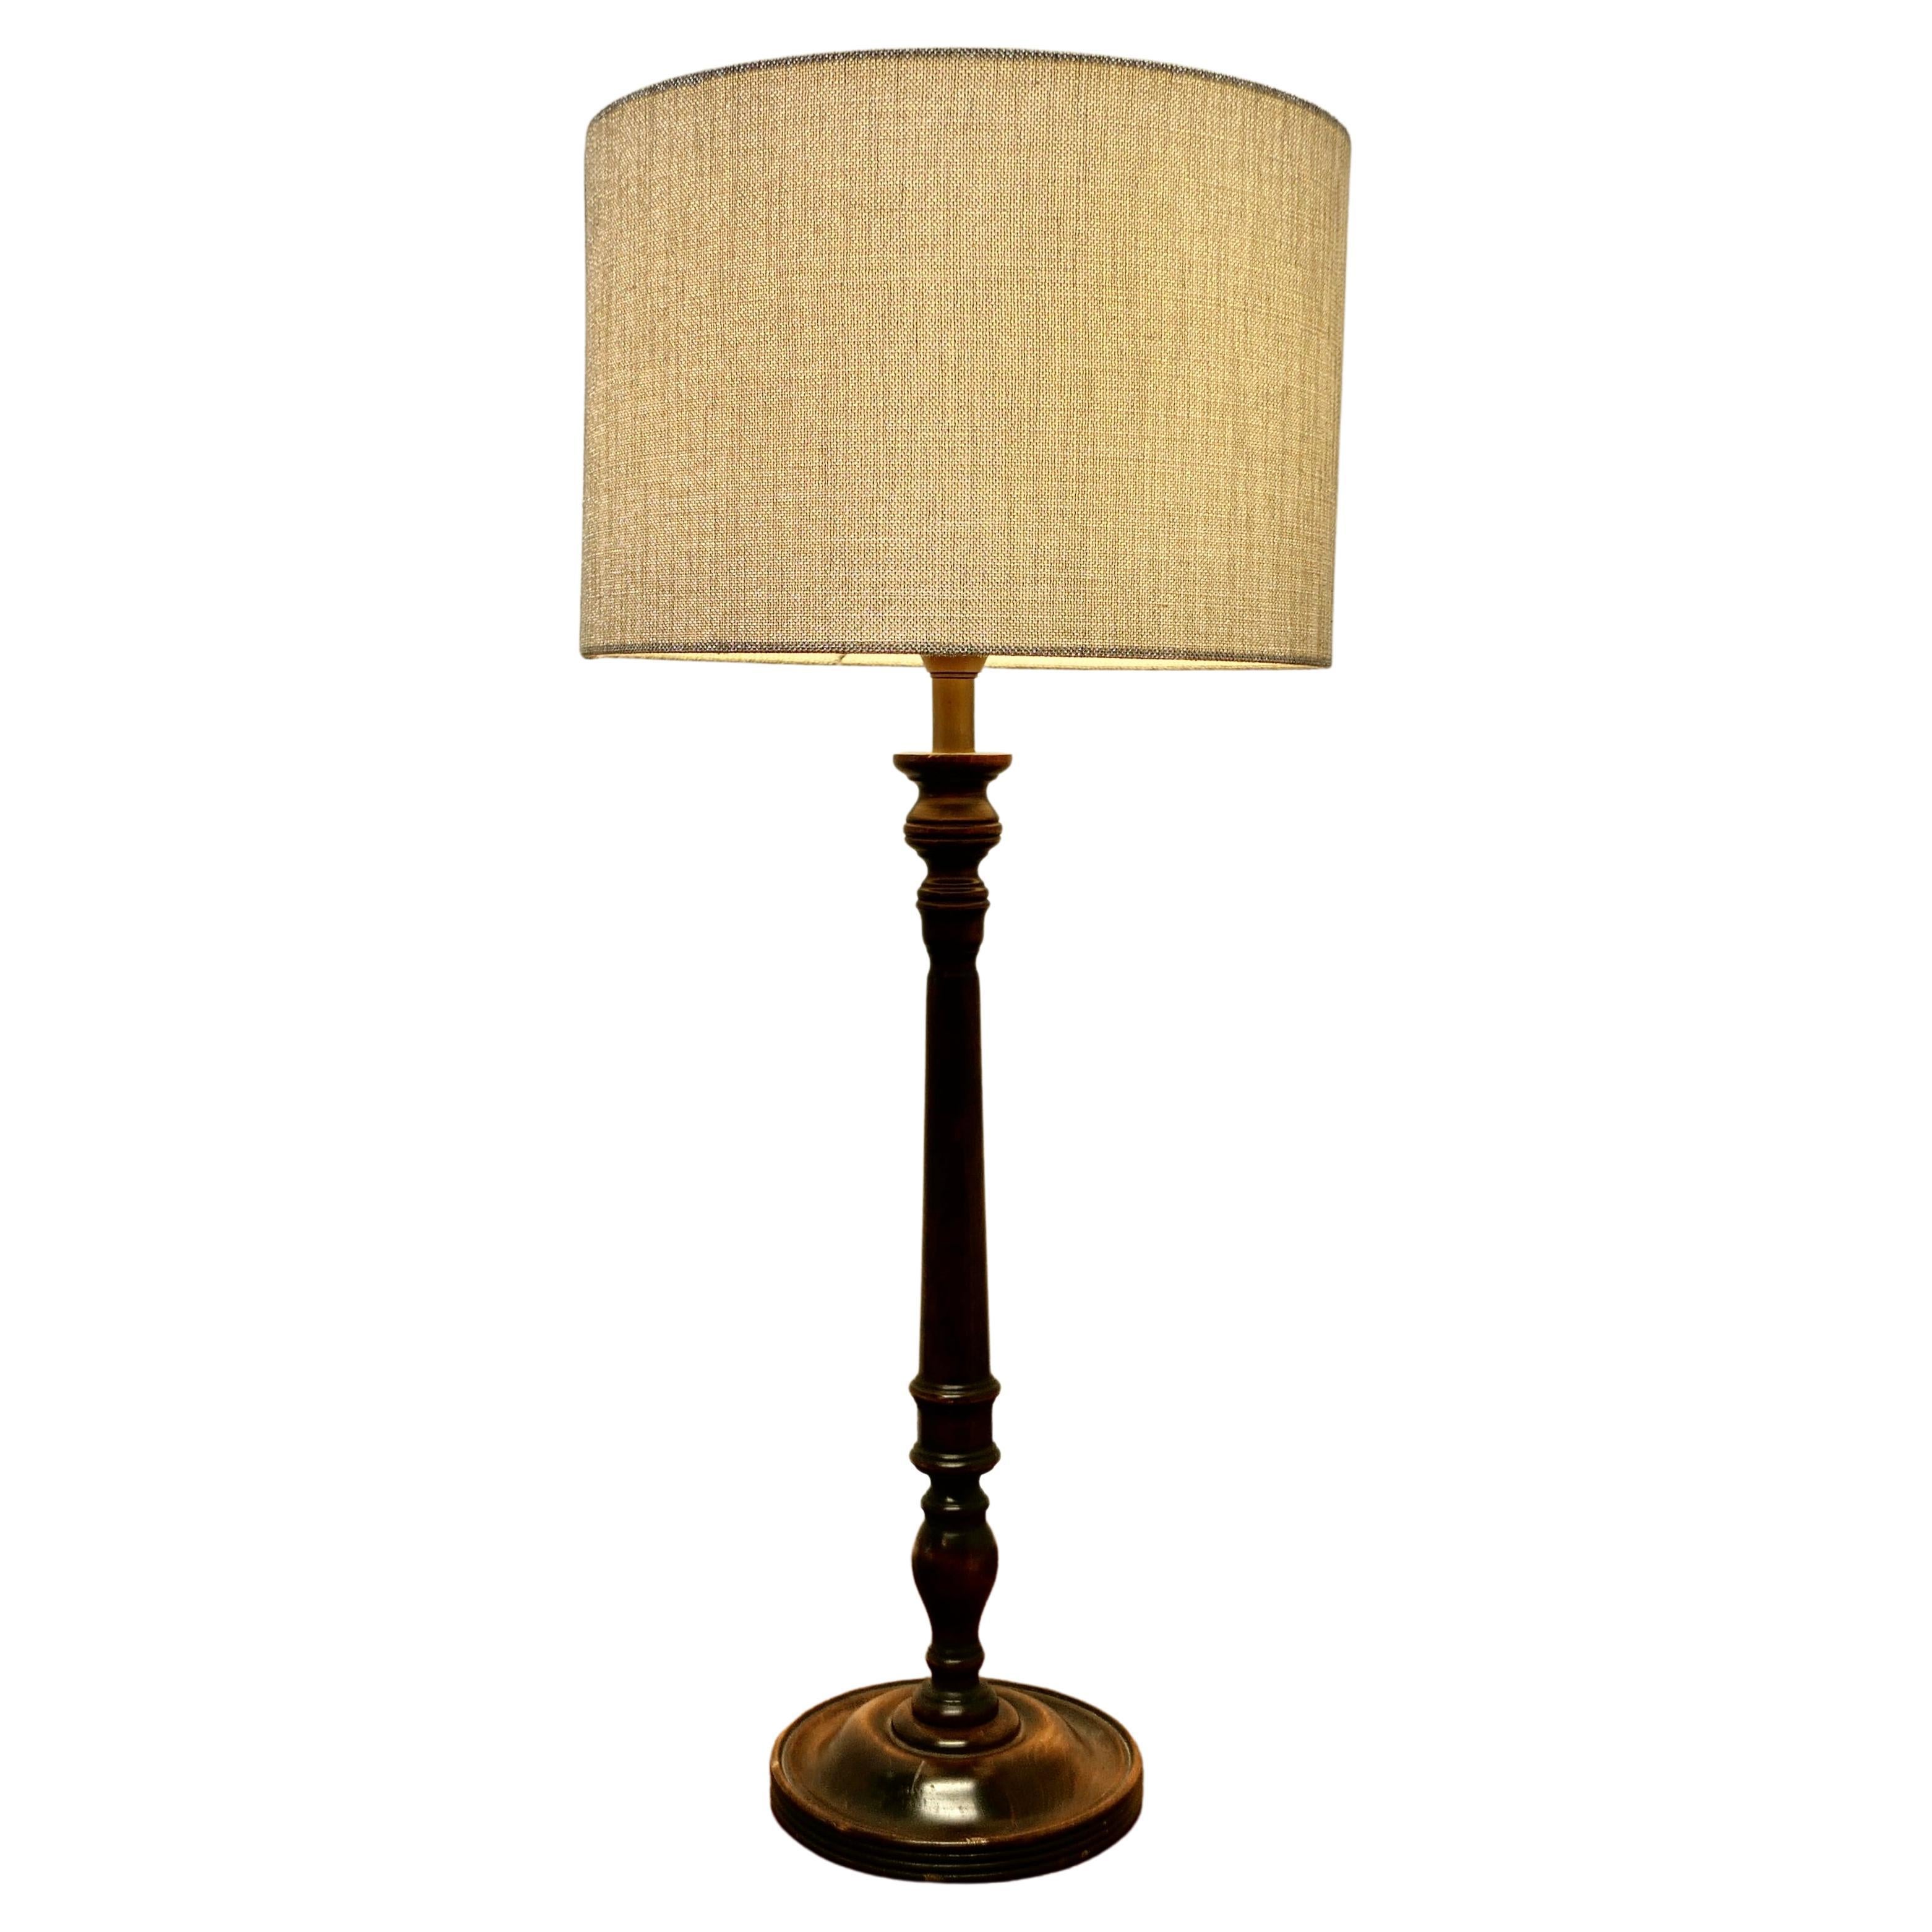 Tall Turned Dark Wood Table Lamp   